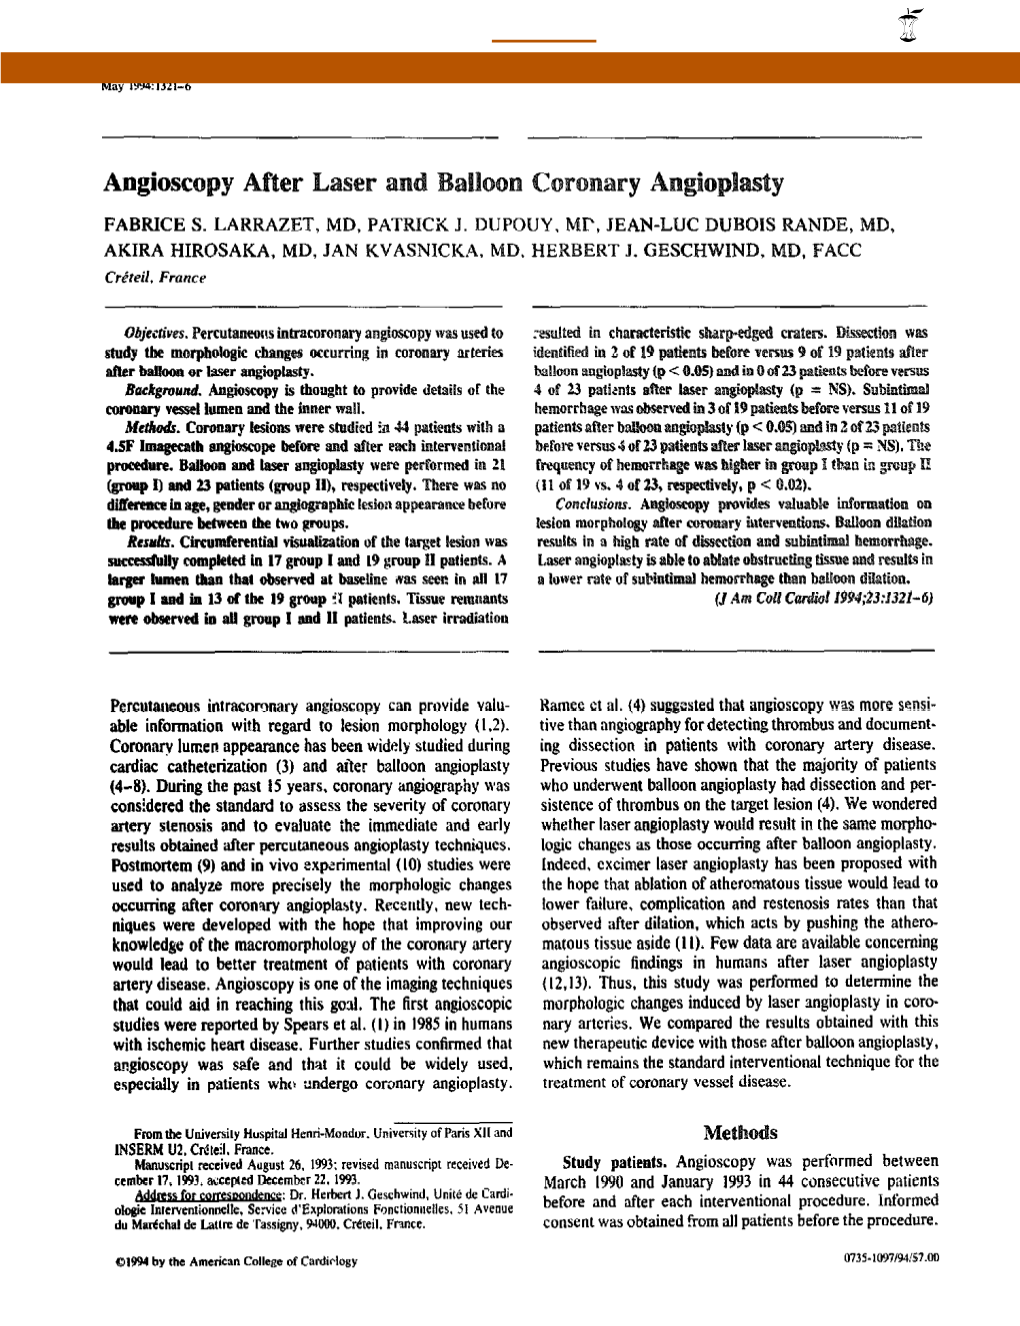 Angioscopy After Laser and Balloon Coronary Angioplasty